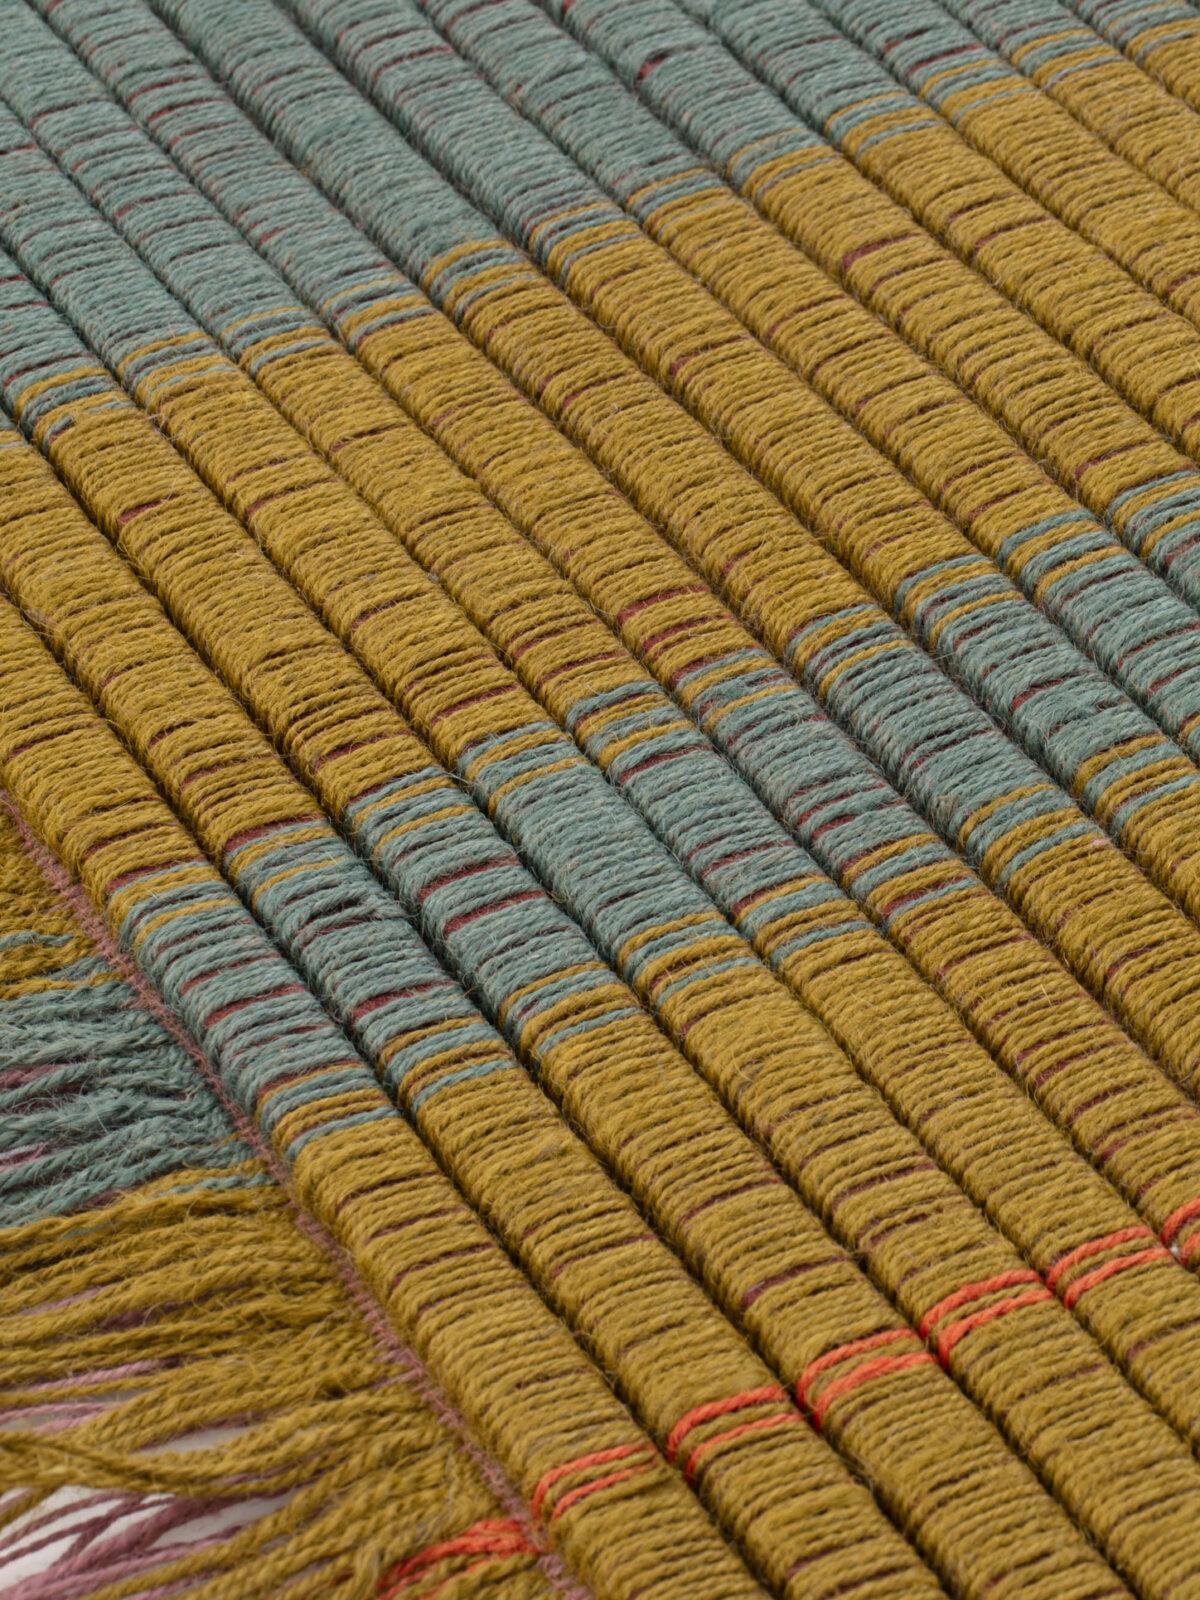 Omote ist eine Teppichkollektion, die von der Designerin Mae Engelgeer für die Marke CC-Tapis entworfen wurde. Die Omote-Teppichkollektion besteht aus Jute und gefilzter Wolle und wird von Hand gewebt.

Eines der charakteristischen Elemente der